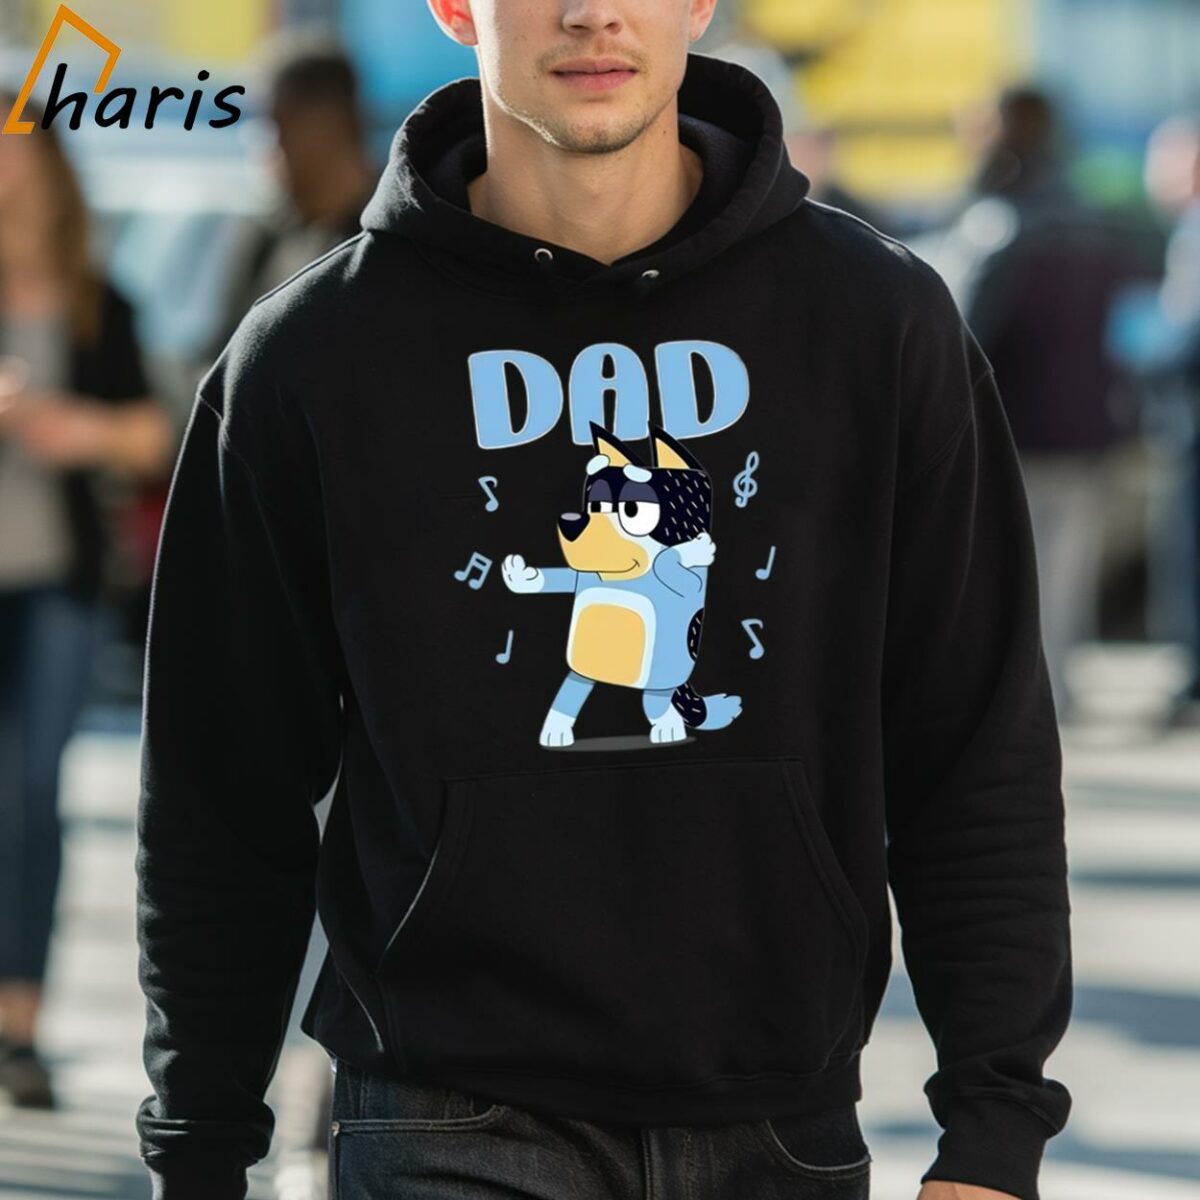 Bluey Dadlife Bandit Heeler T shirt 5 hoodie